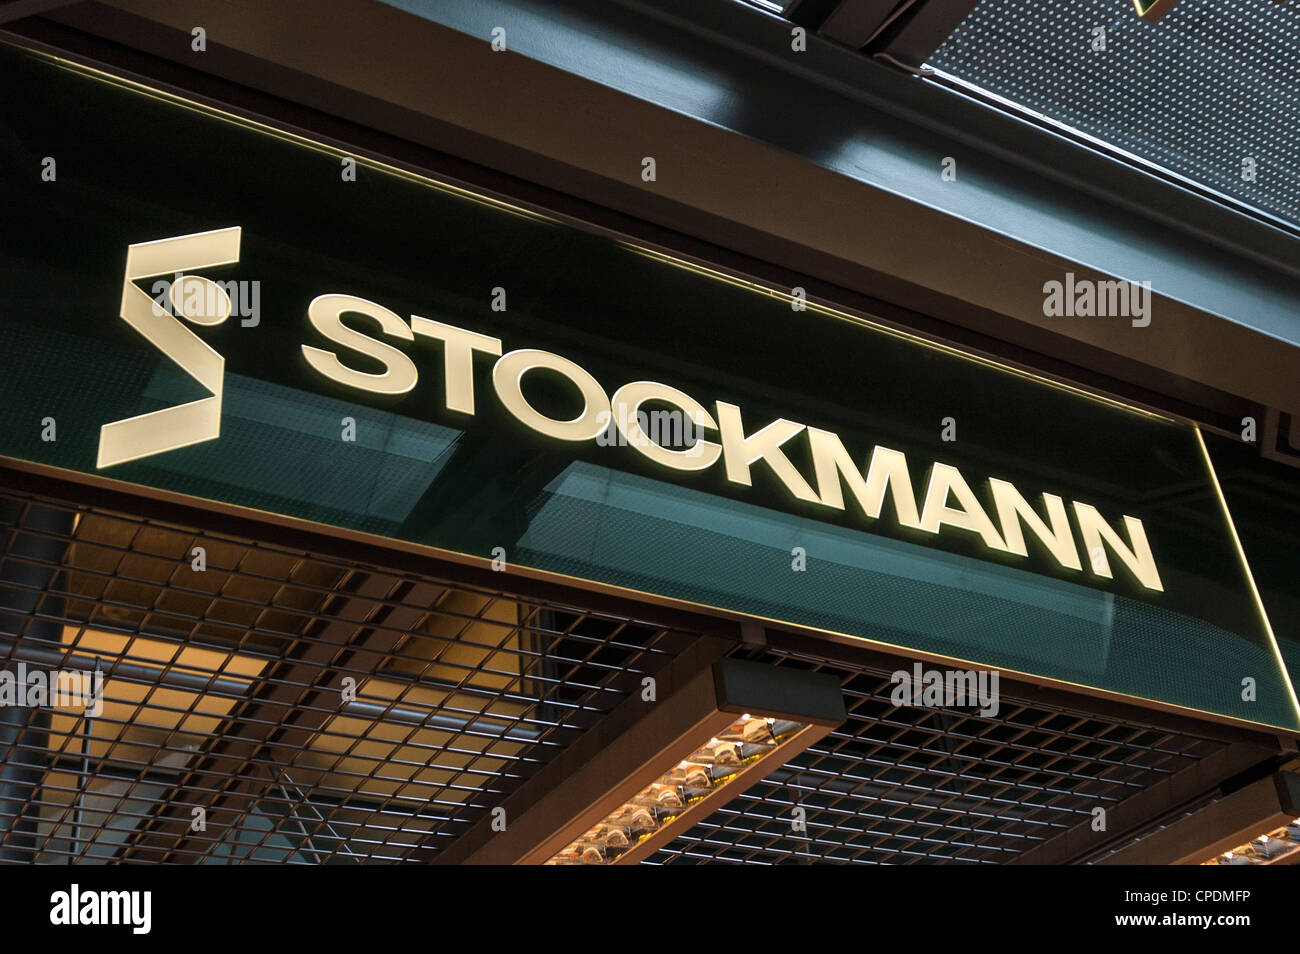 Du célèbre grand magasin Stockmann à Helsinki, en Finlande. Banque D'Images